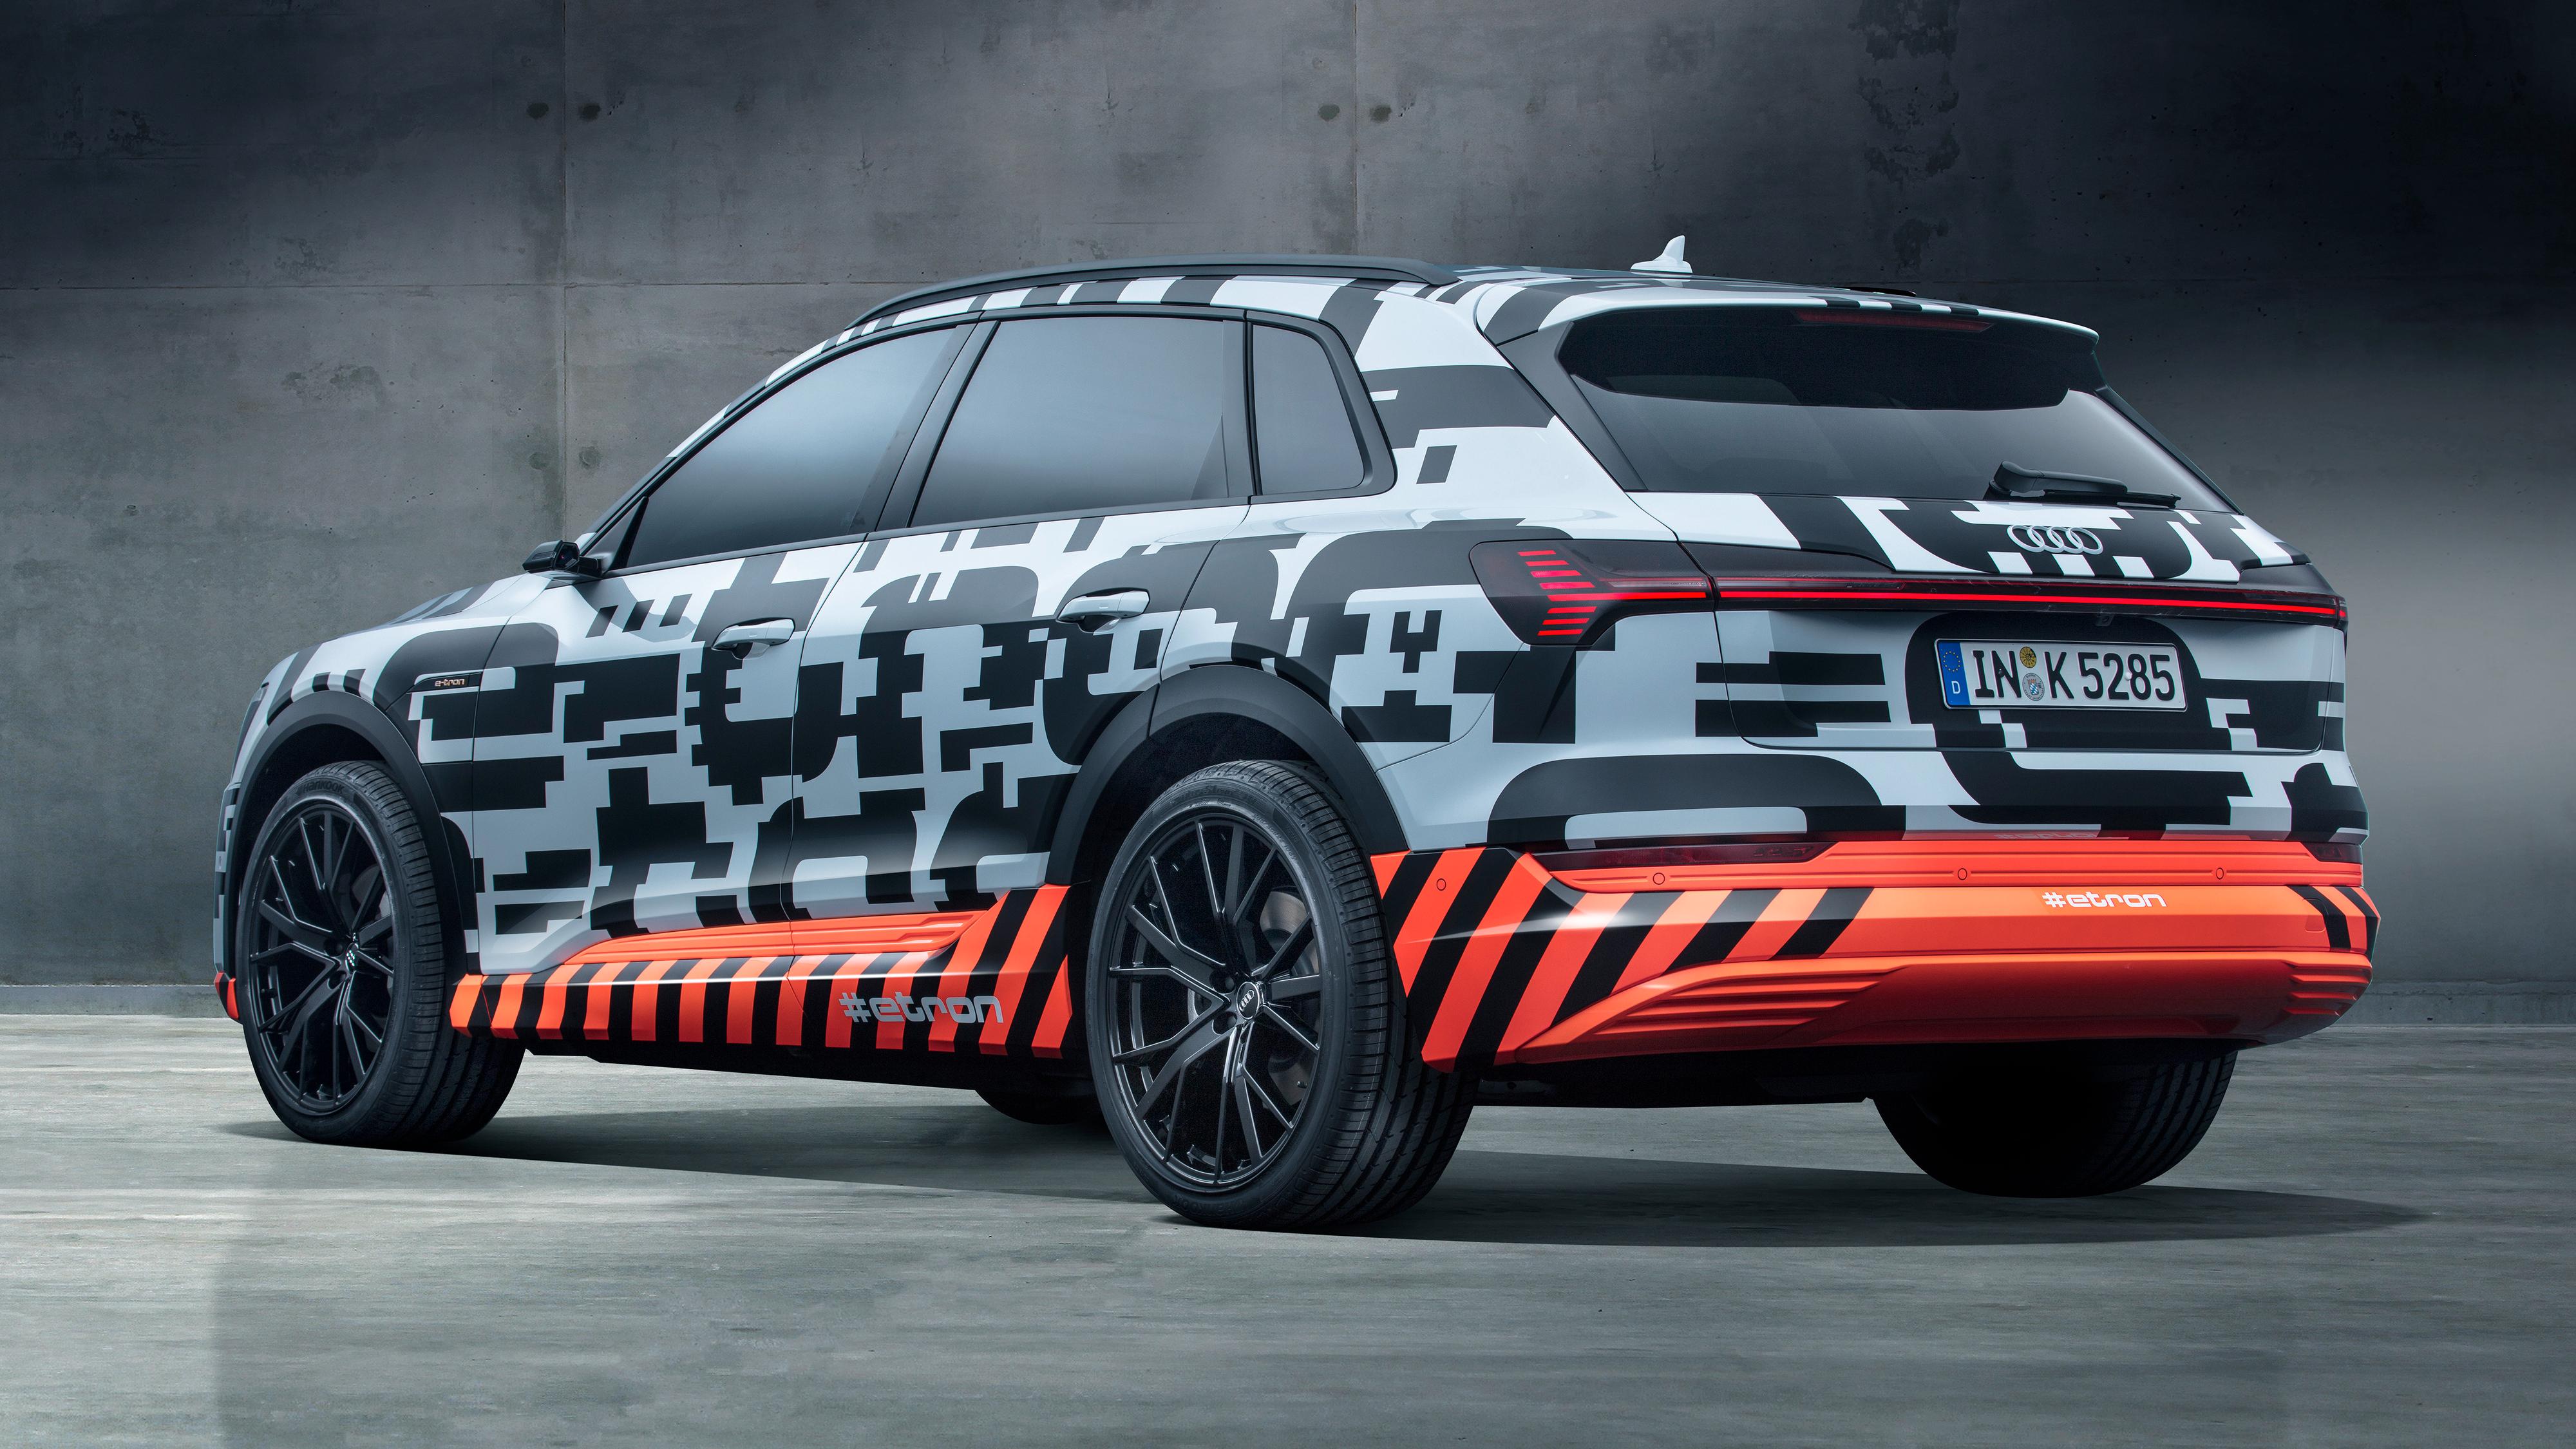 Audis elbil har fått pris - i Tyskland